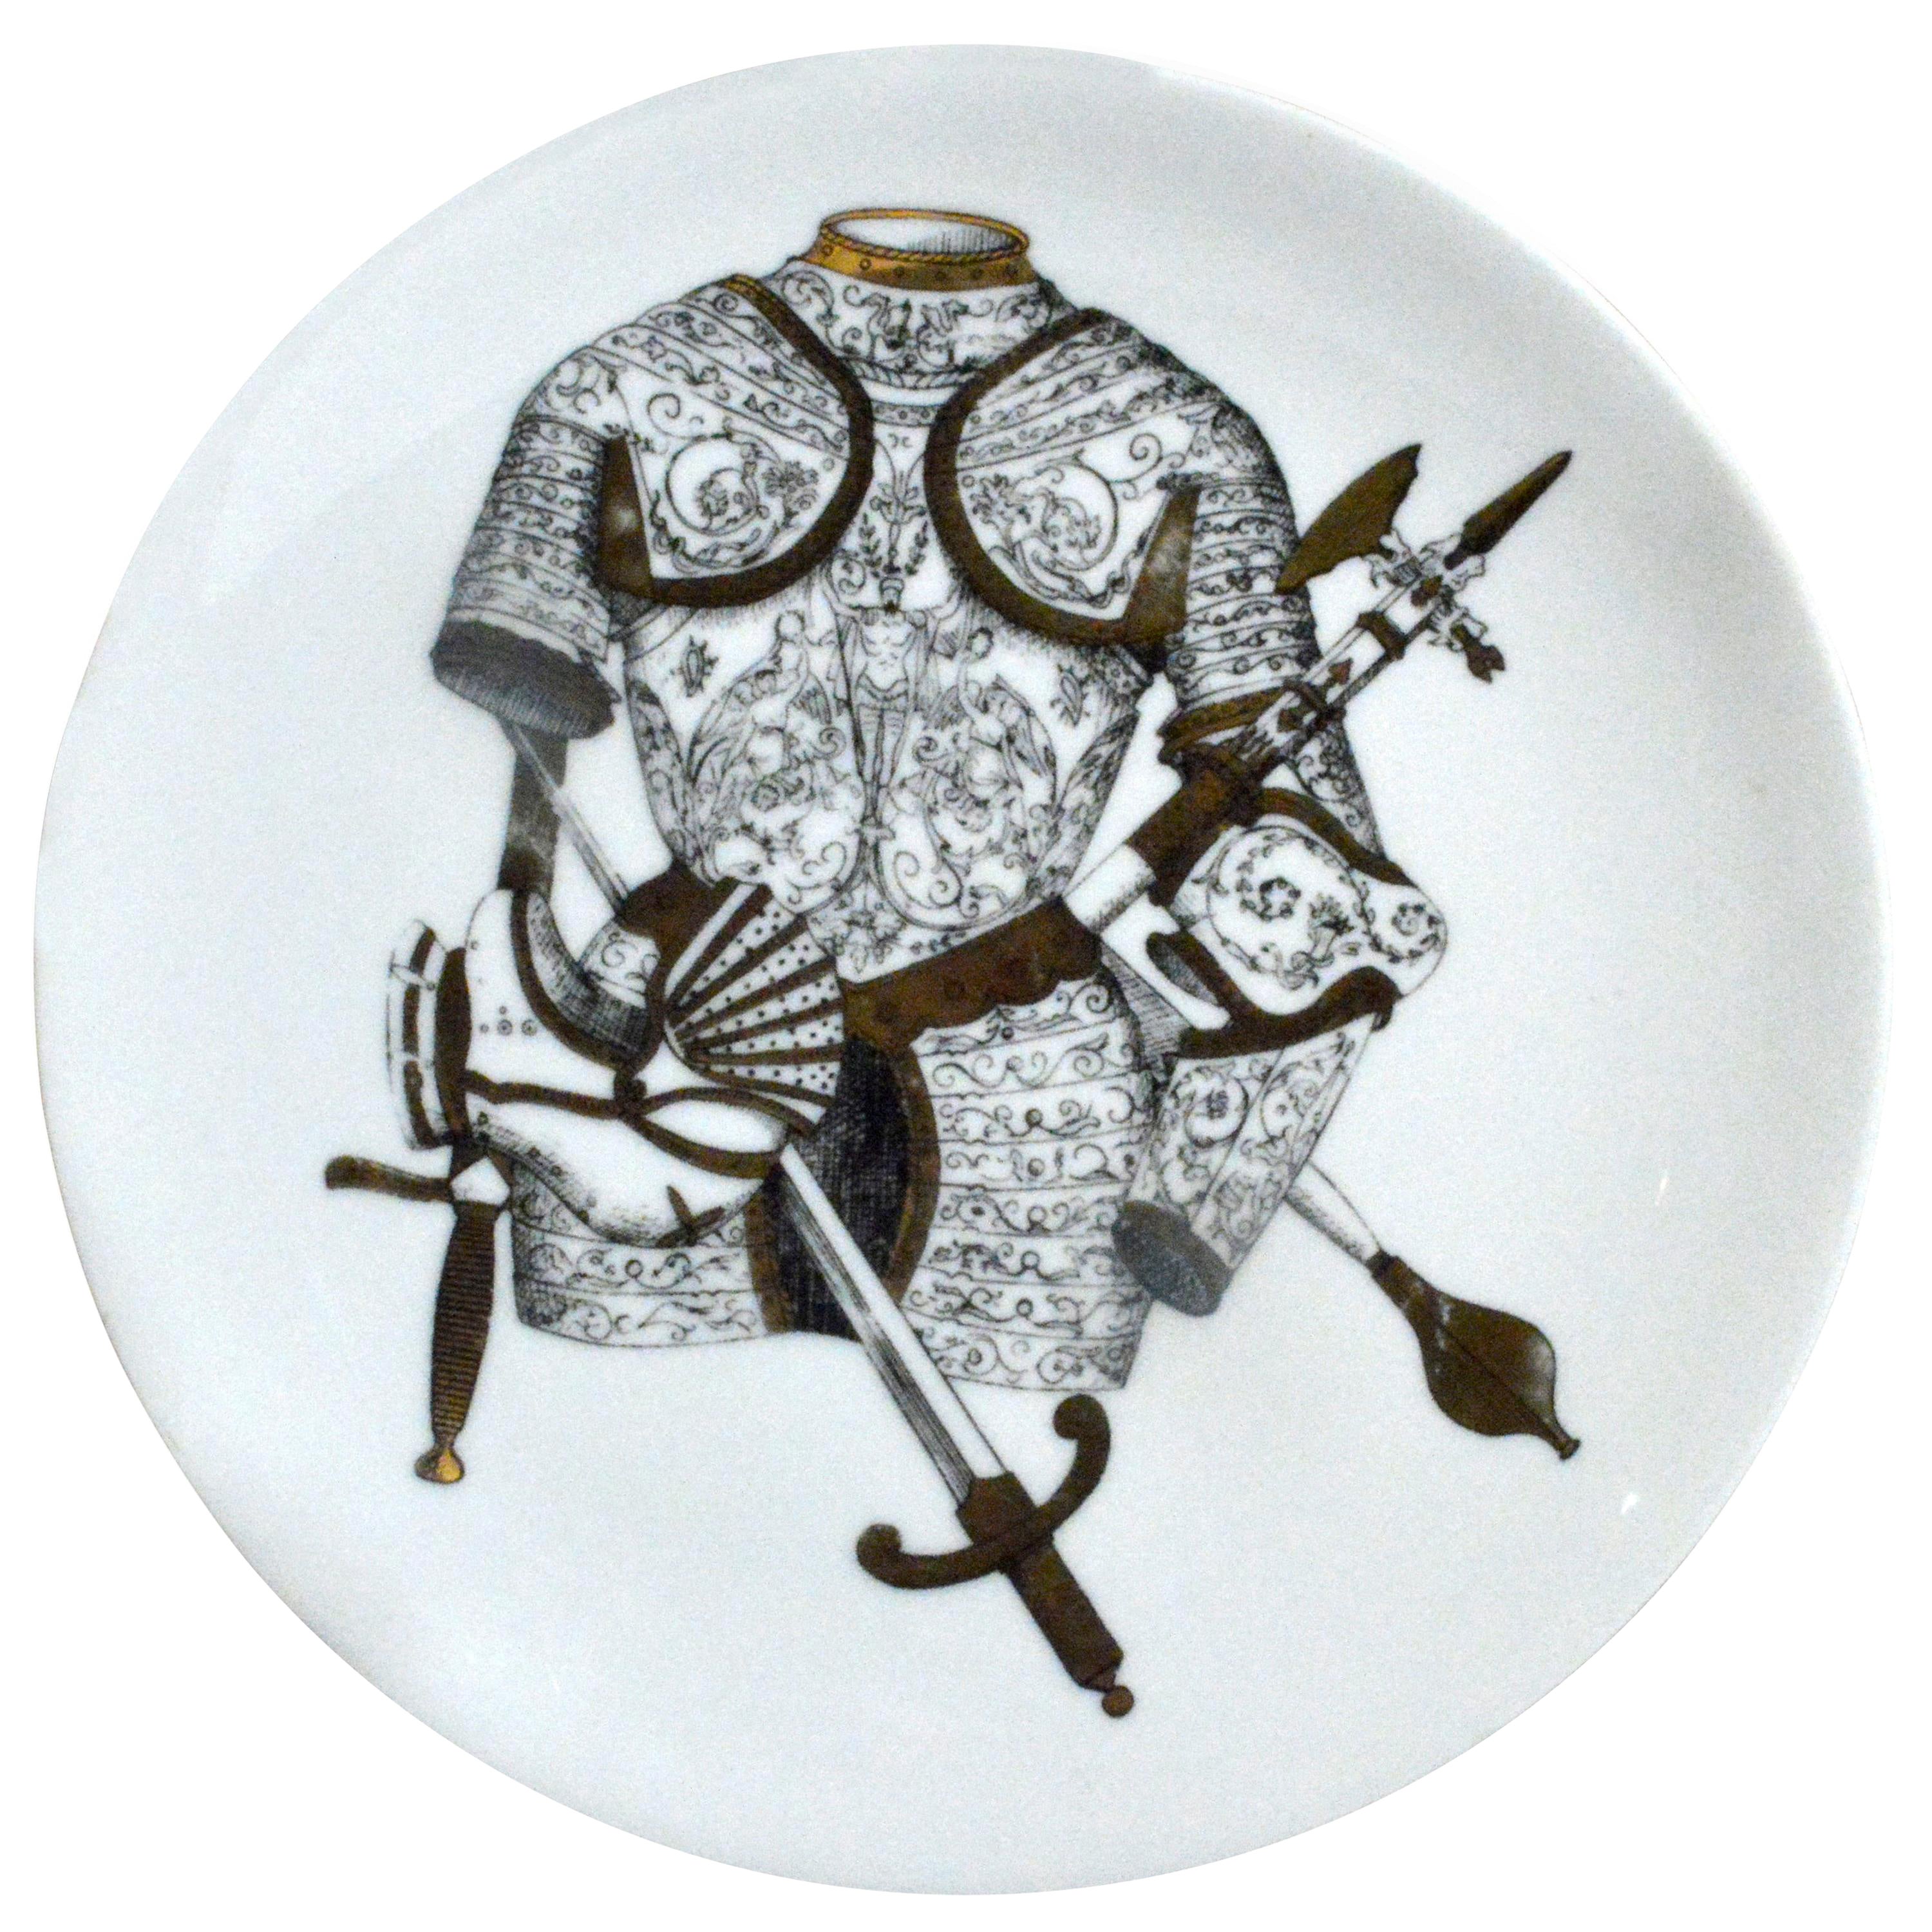 Porzellanteller von Piero Fornasetti mit Wappenmuster